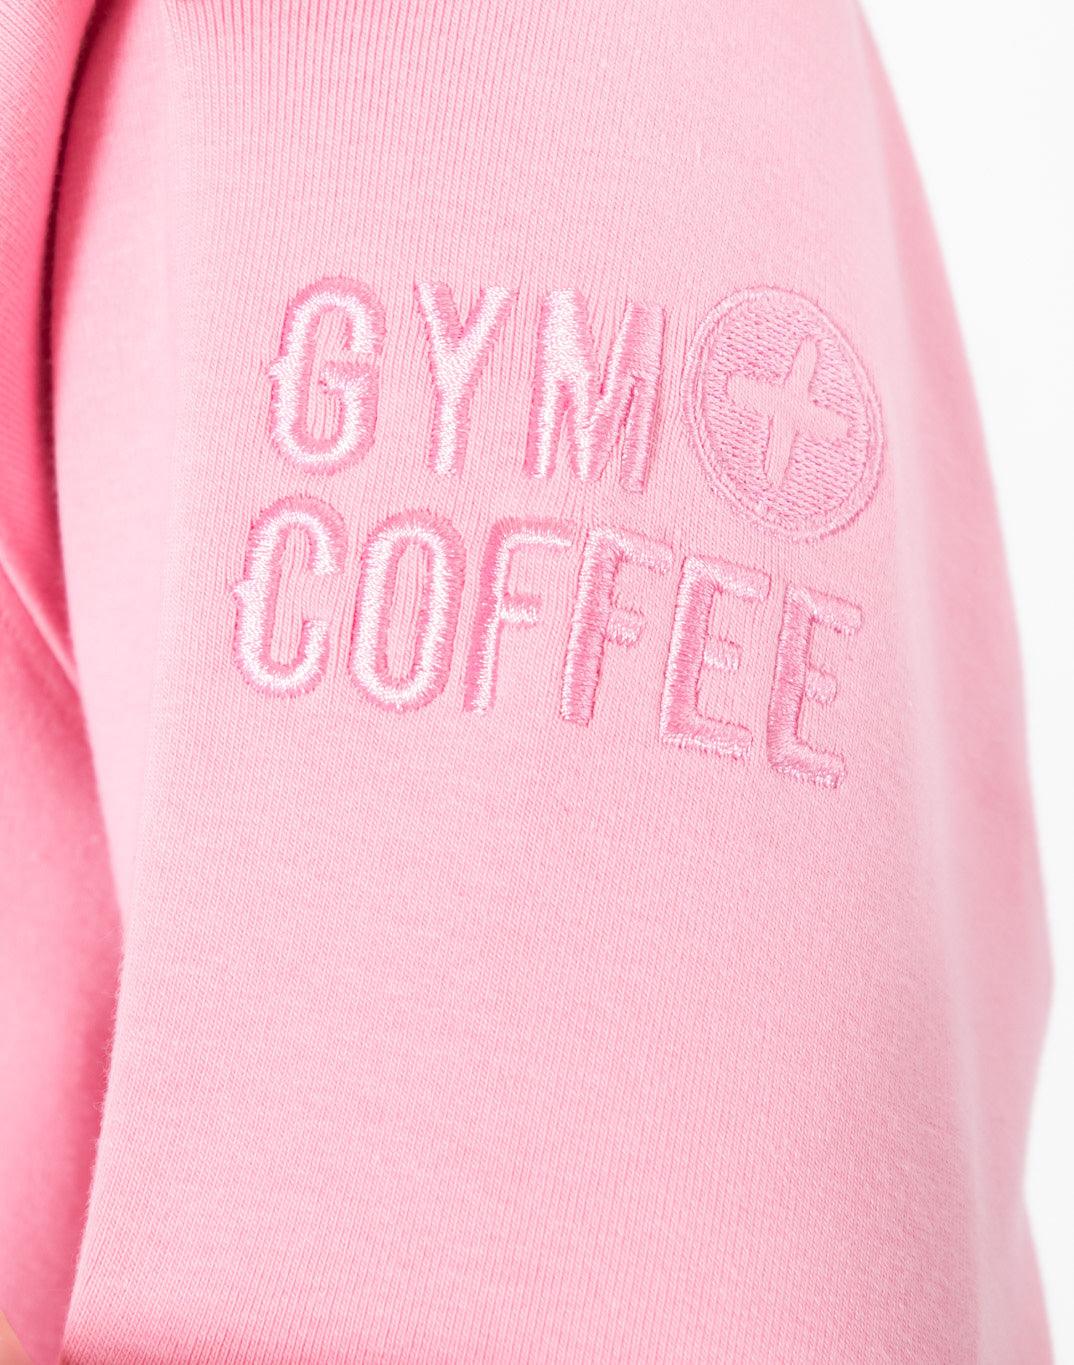 Chill Hoodie in Pink Rose - Hoodies - Gym+Coffee IE